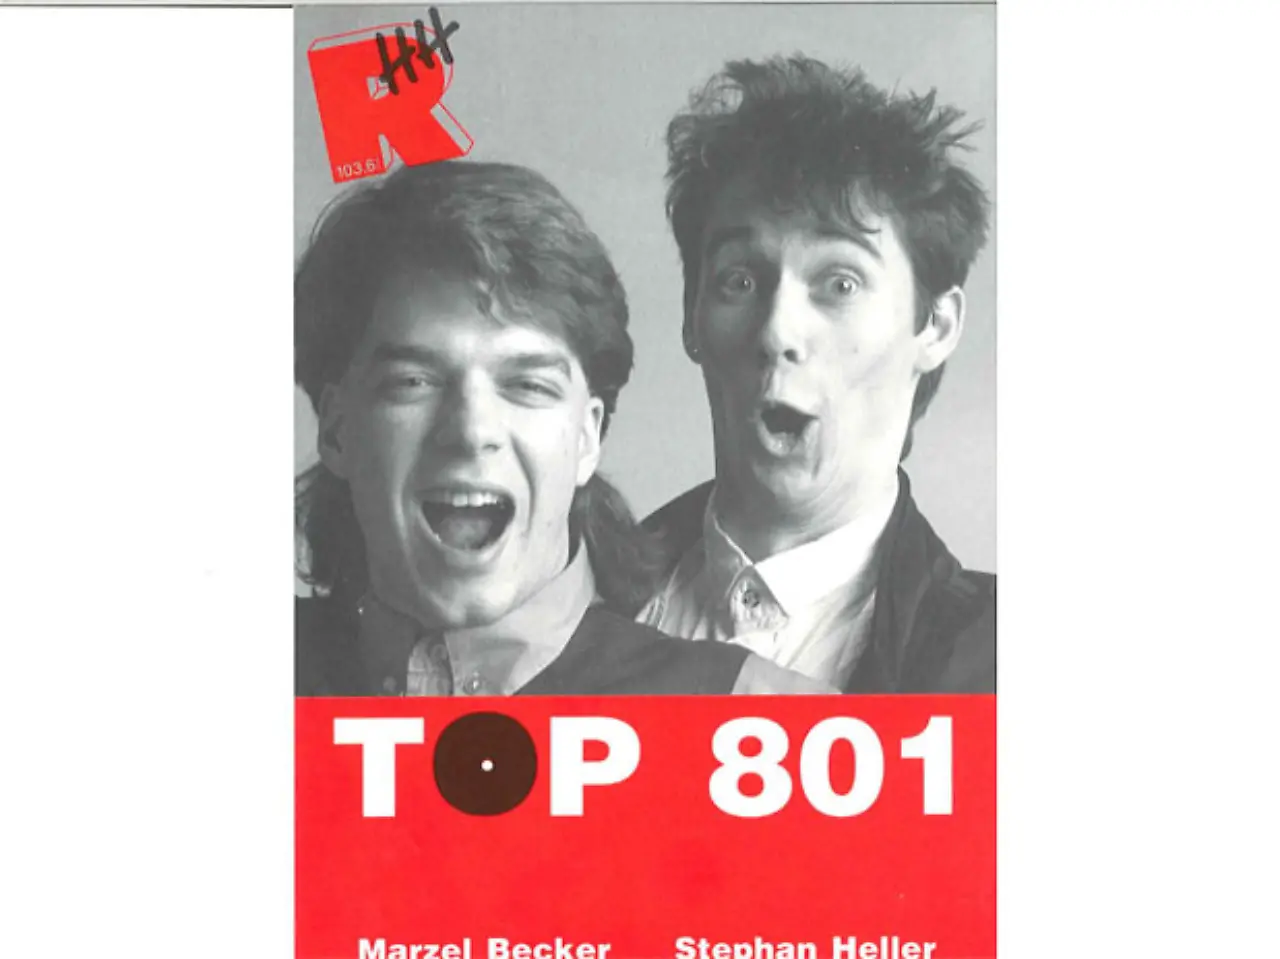 Die TOP 801 im Jahr 1990